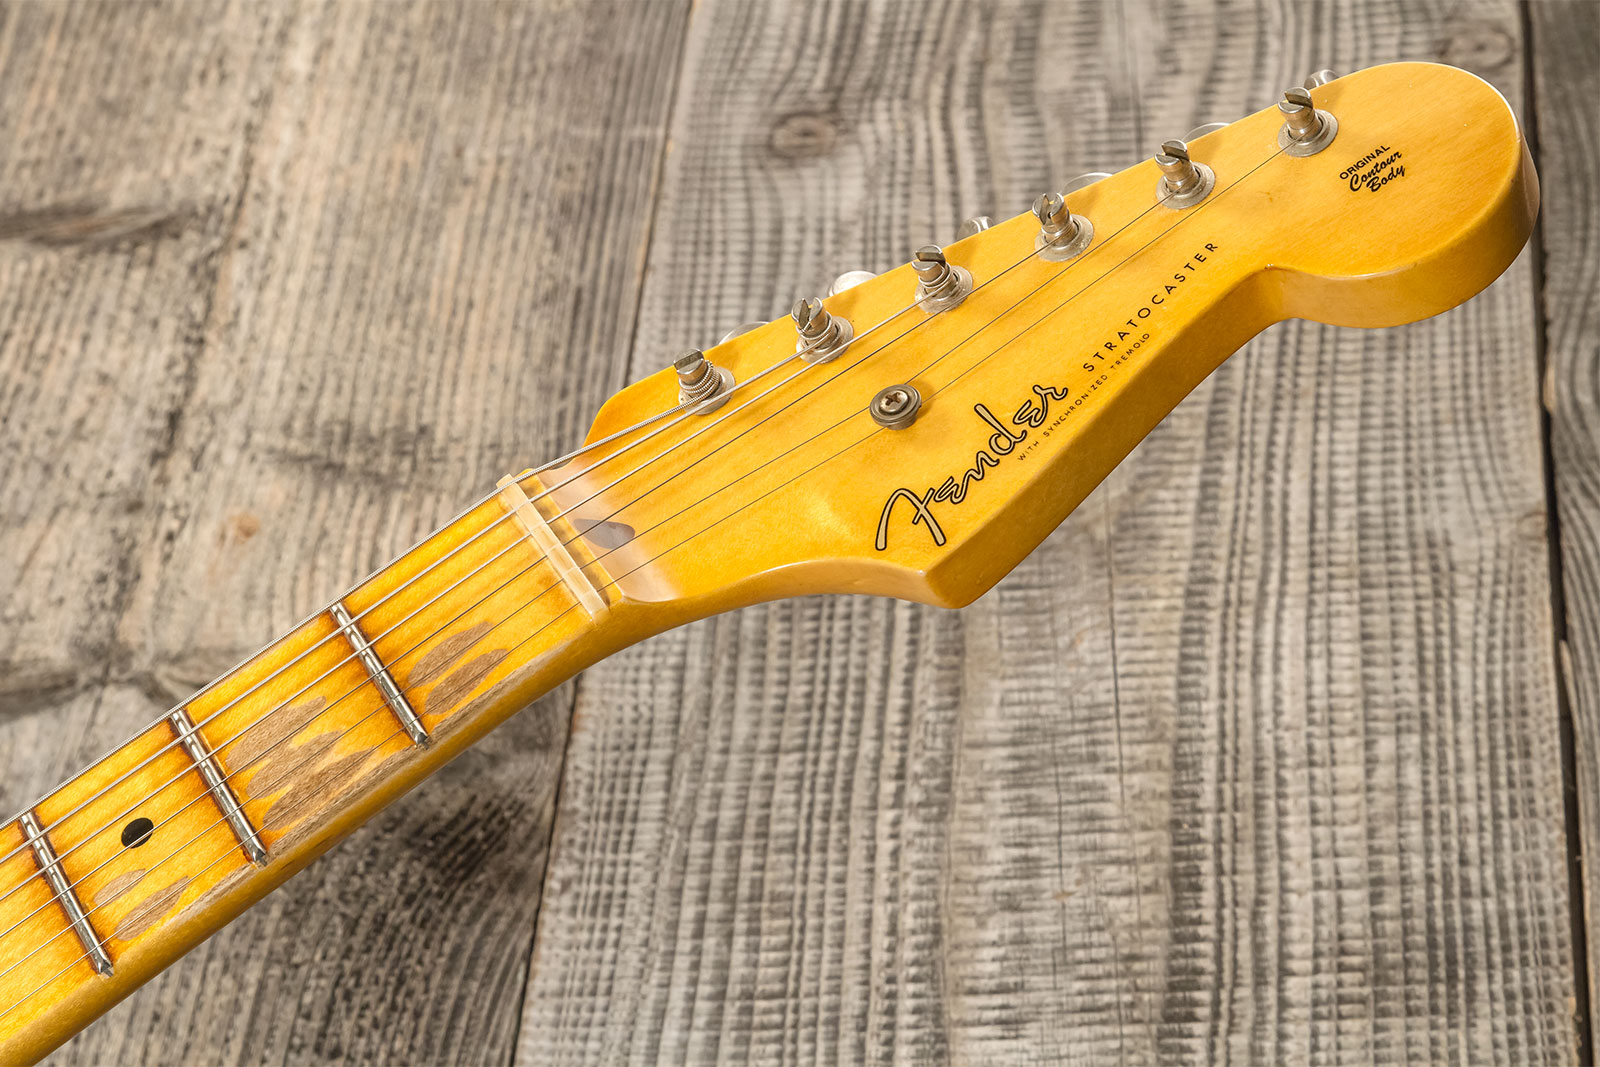 Fender Custom Shop Strat 1955 3s Trem Mn #r130058 - Journeyman Relic 2-color Sunburst - E-Gitarre in Str-Form - Variation 9